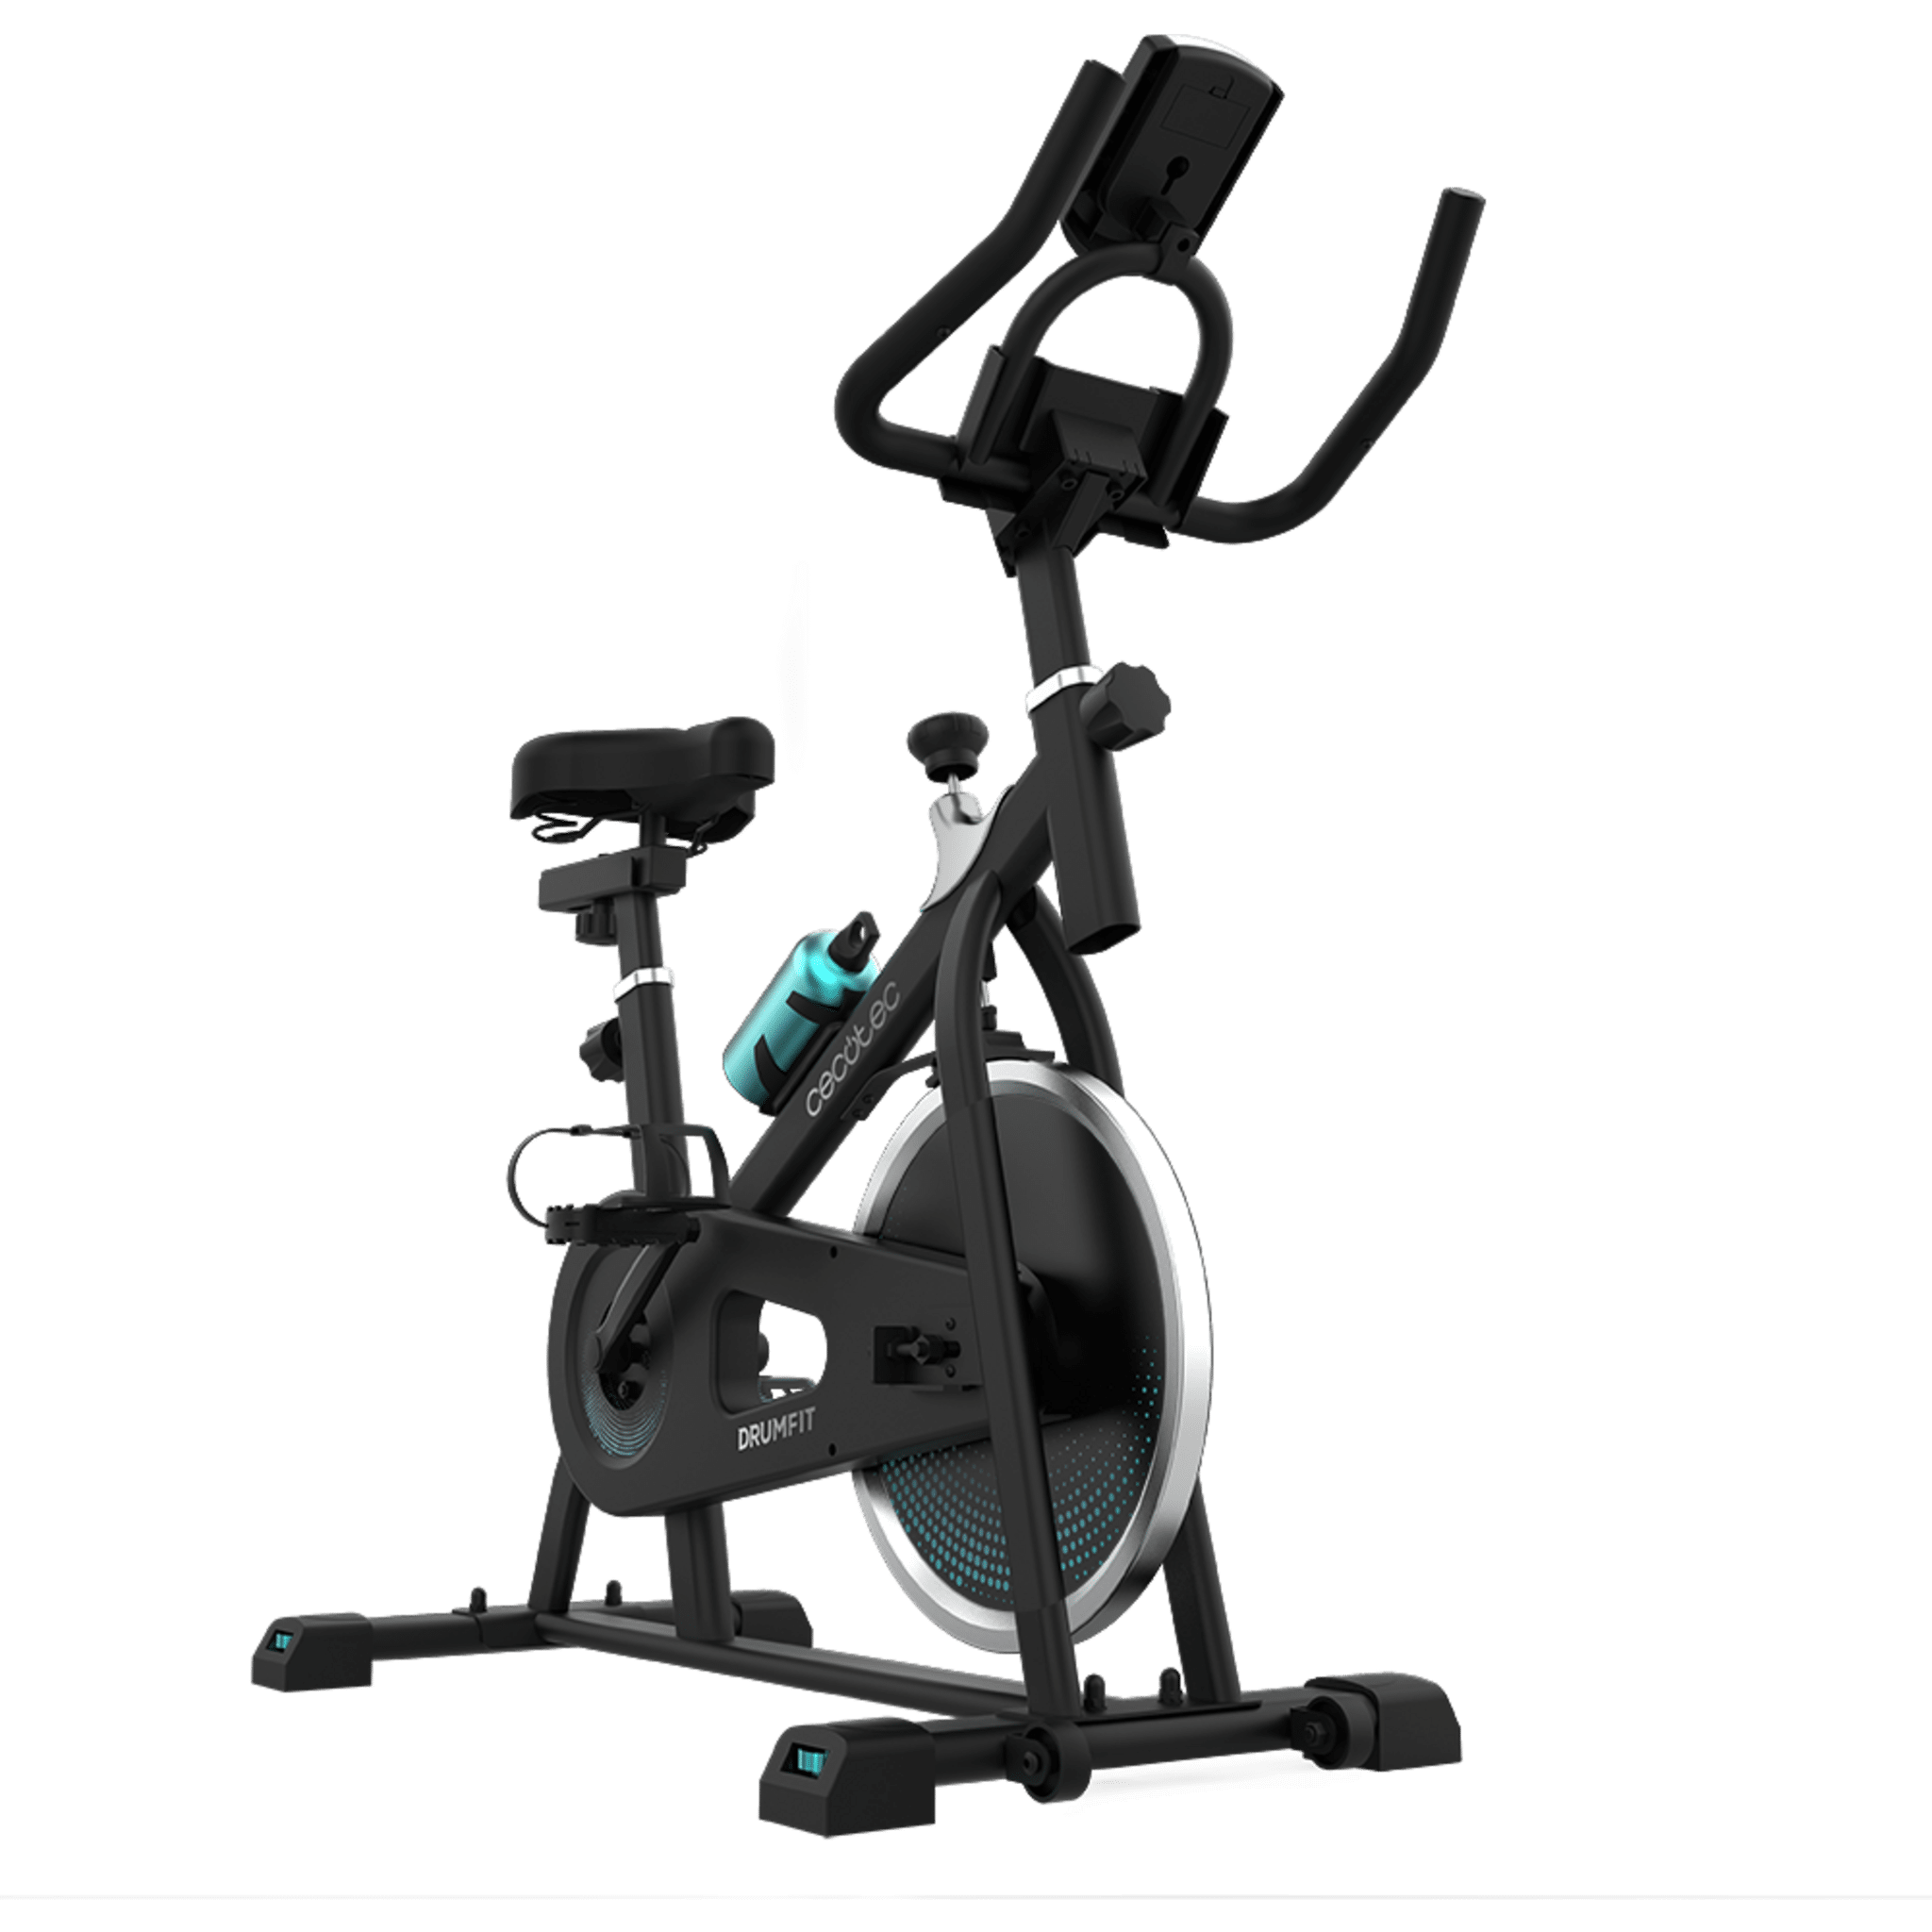 Bicicleta indoor DrumFit Indoor 6000 Forcis con volante de inercia de 6 kg, resistencia manual, monitor LCD, soporte de dispositivos, botella, porta botellas y calapiés